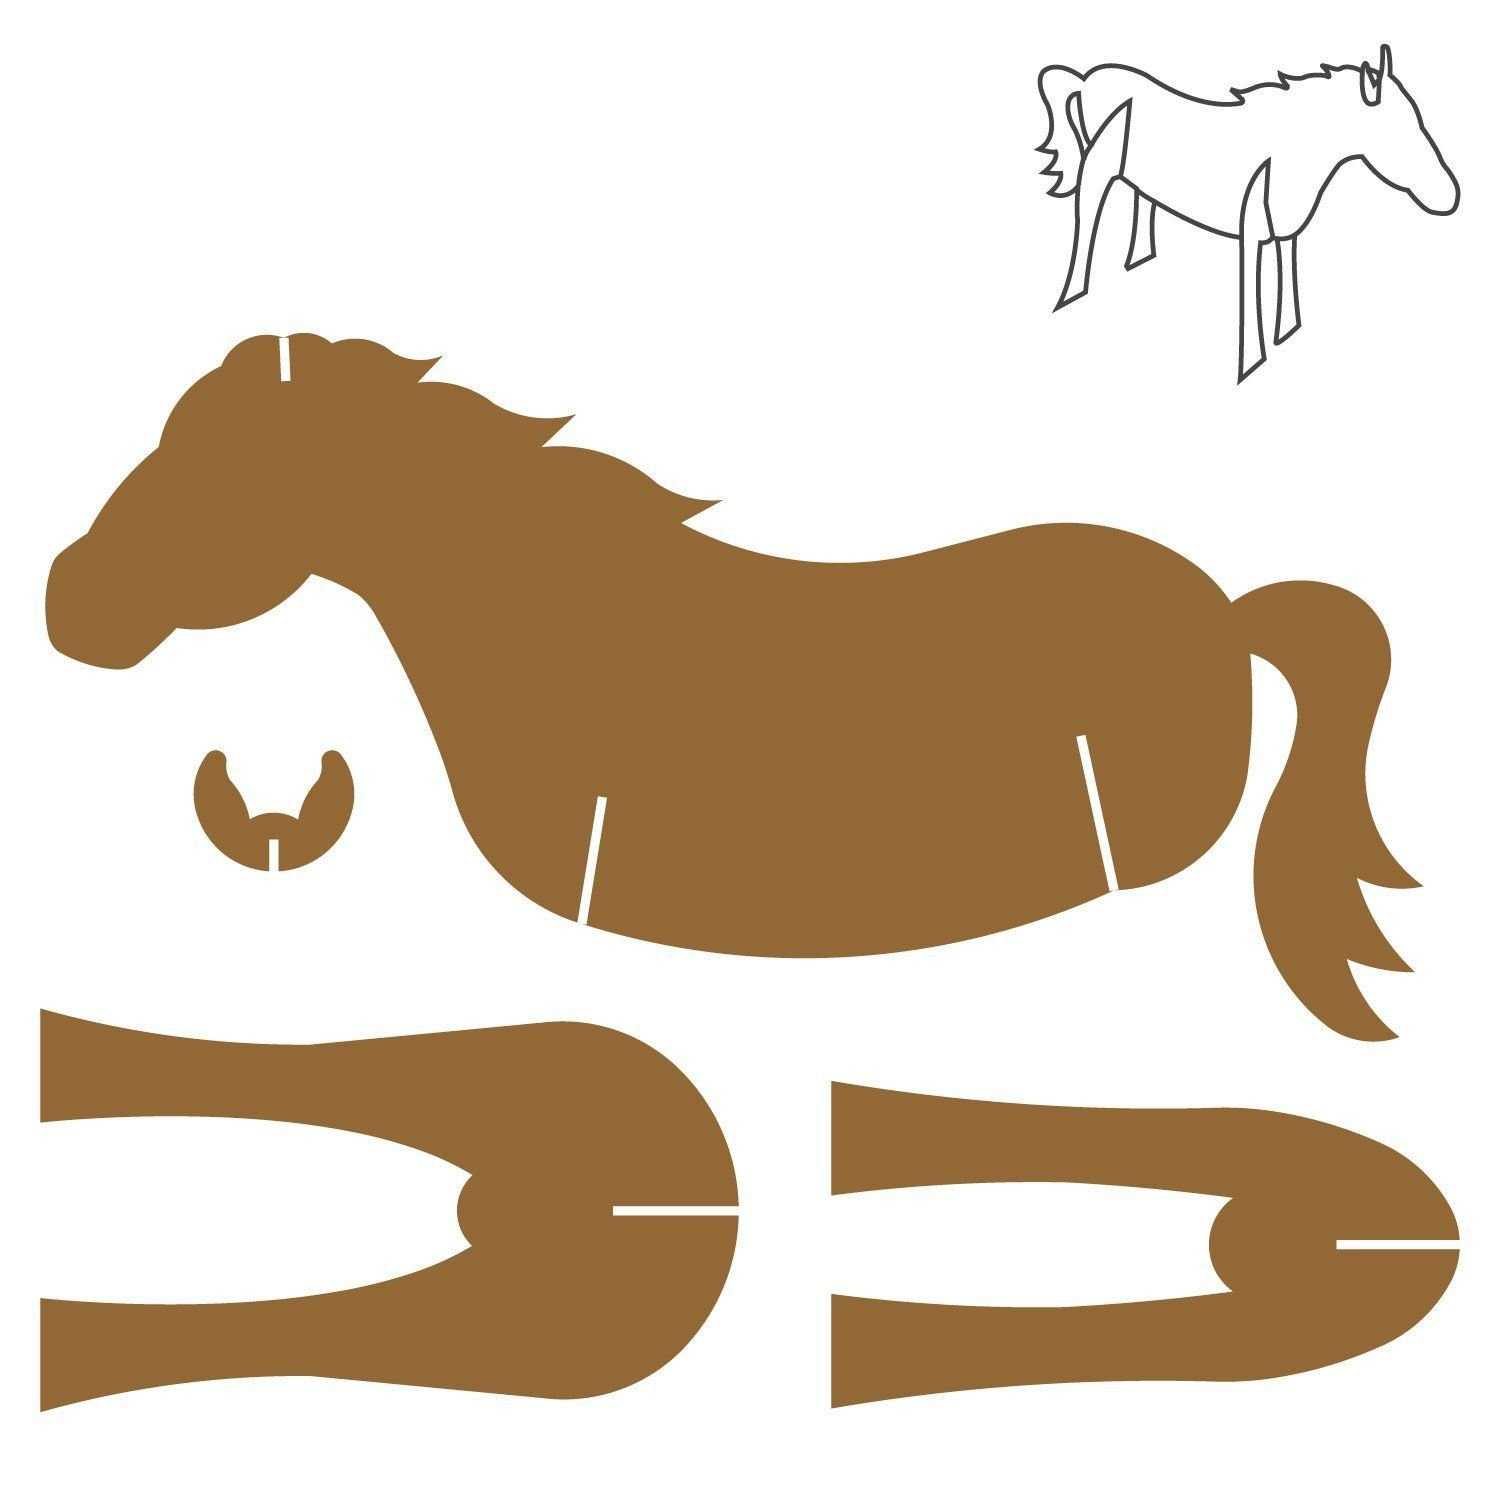 Поделки лошадей из картона и бумаги: схемы с шаблонами